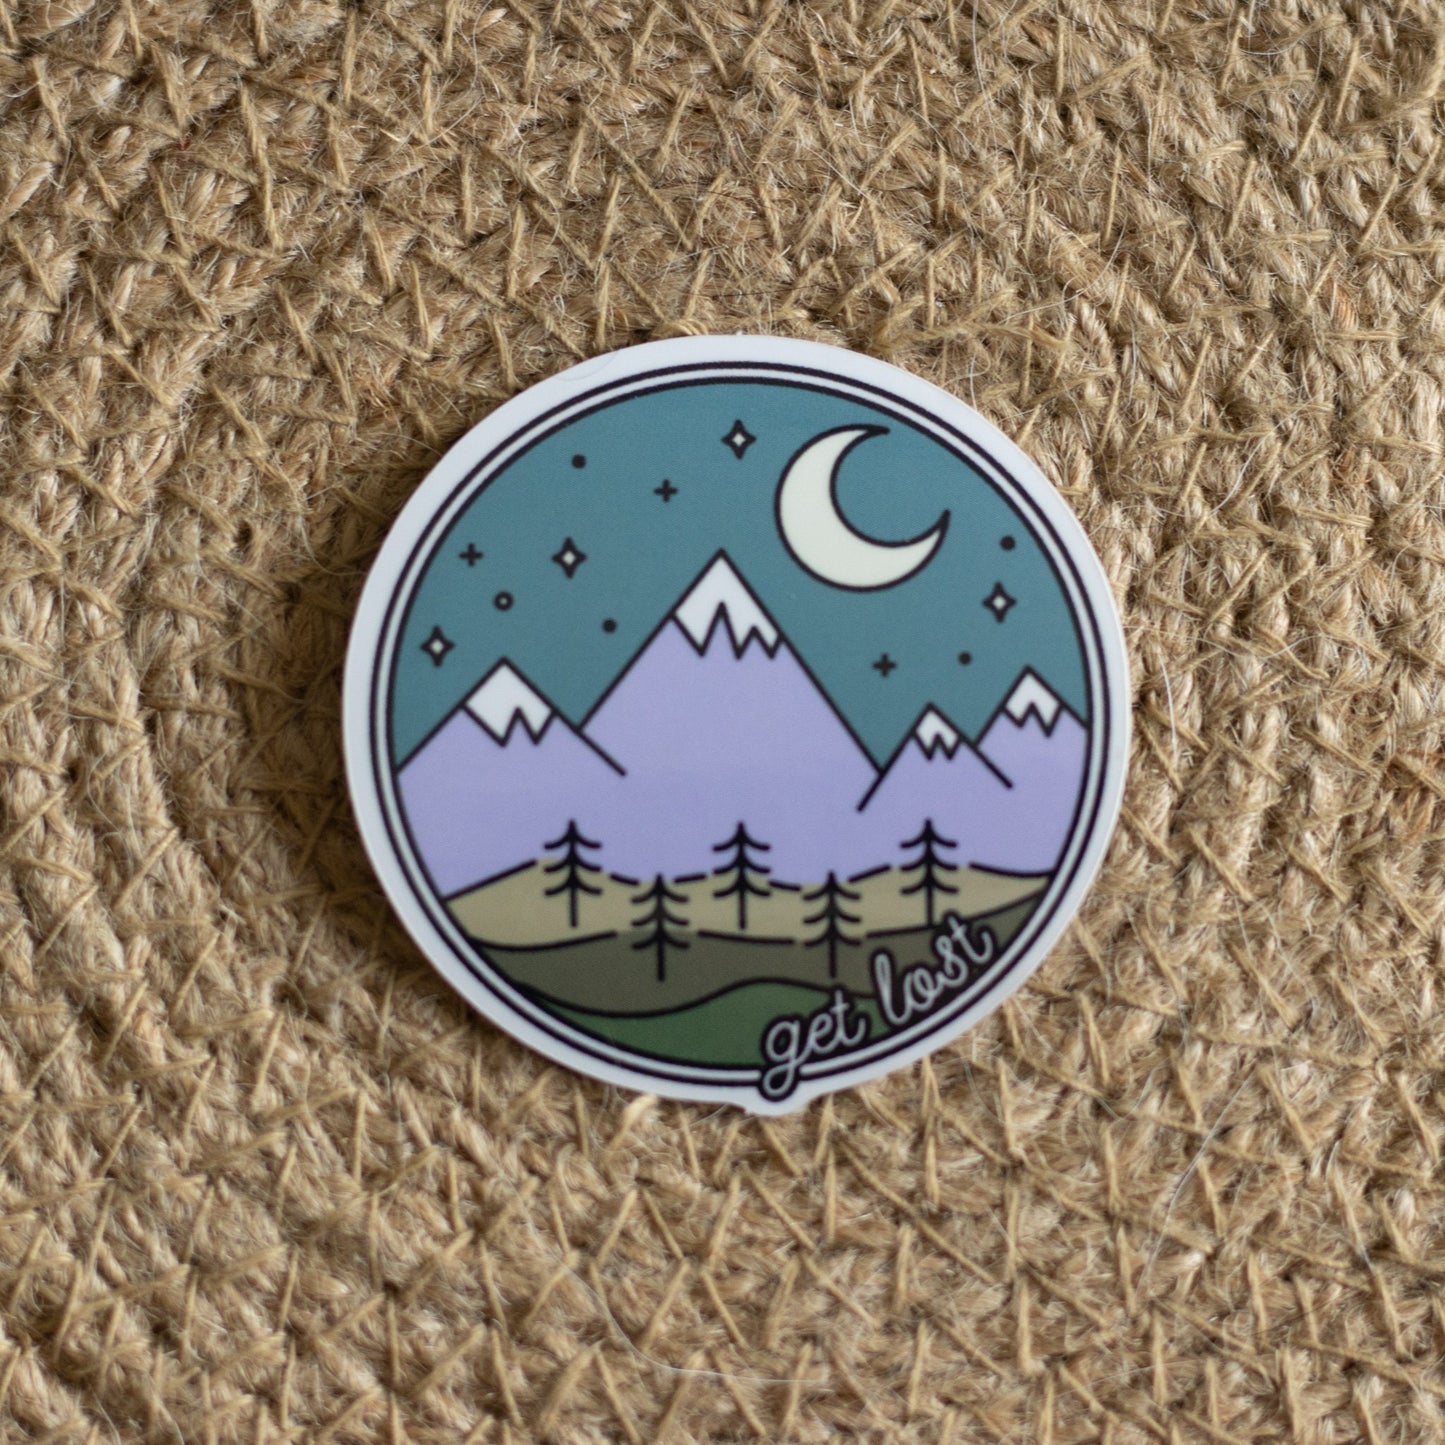 Get Lost Sticker/Adventure Sticker/PNW Sticker/Mountains Sticker/Get Lost/Vinyl Sticker